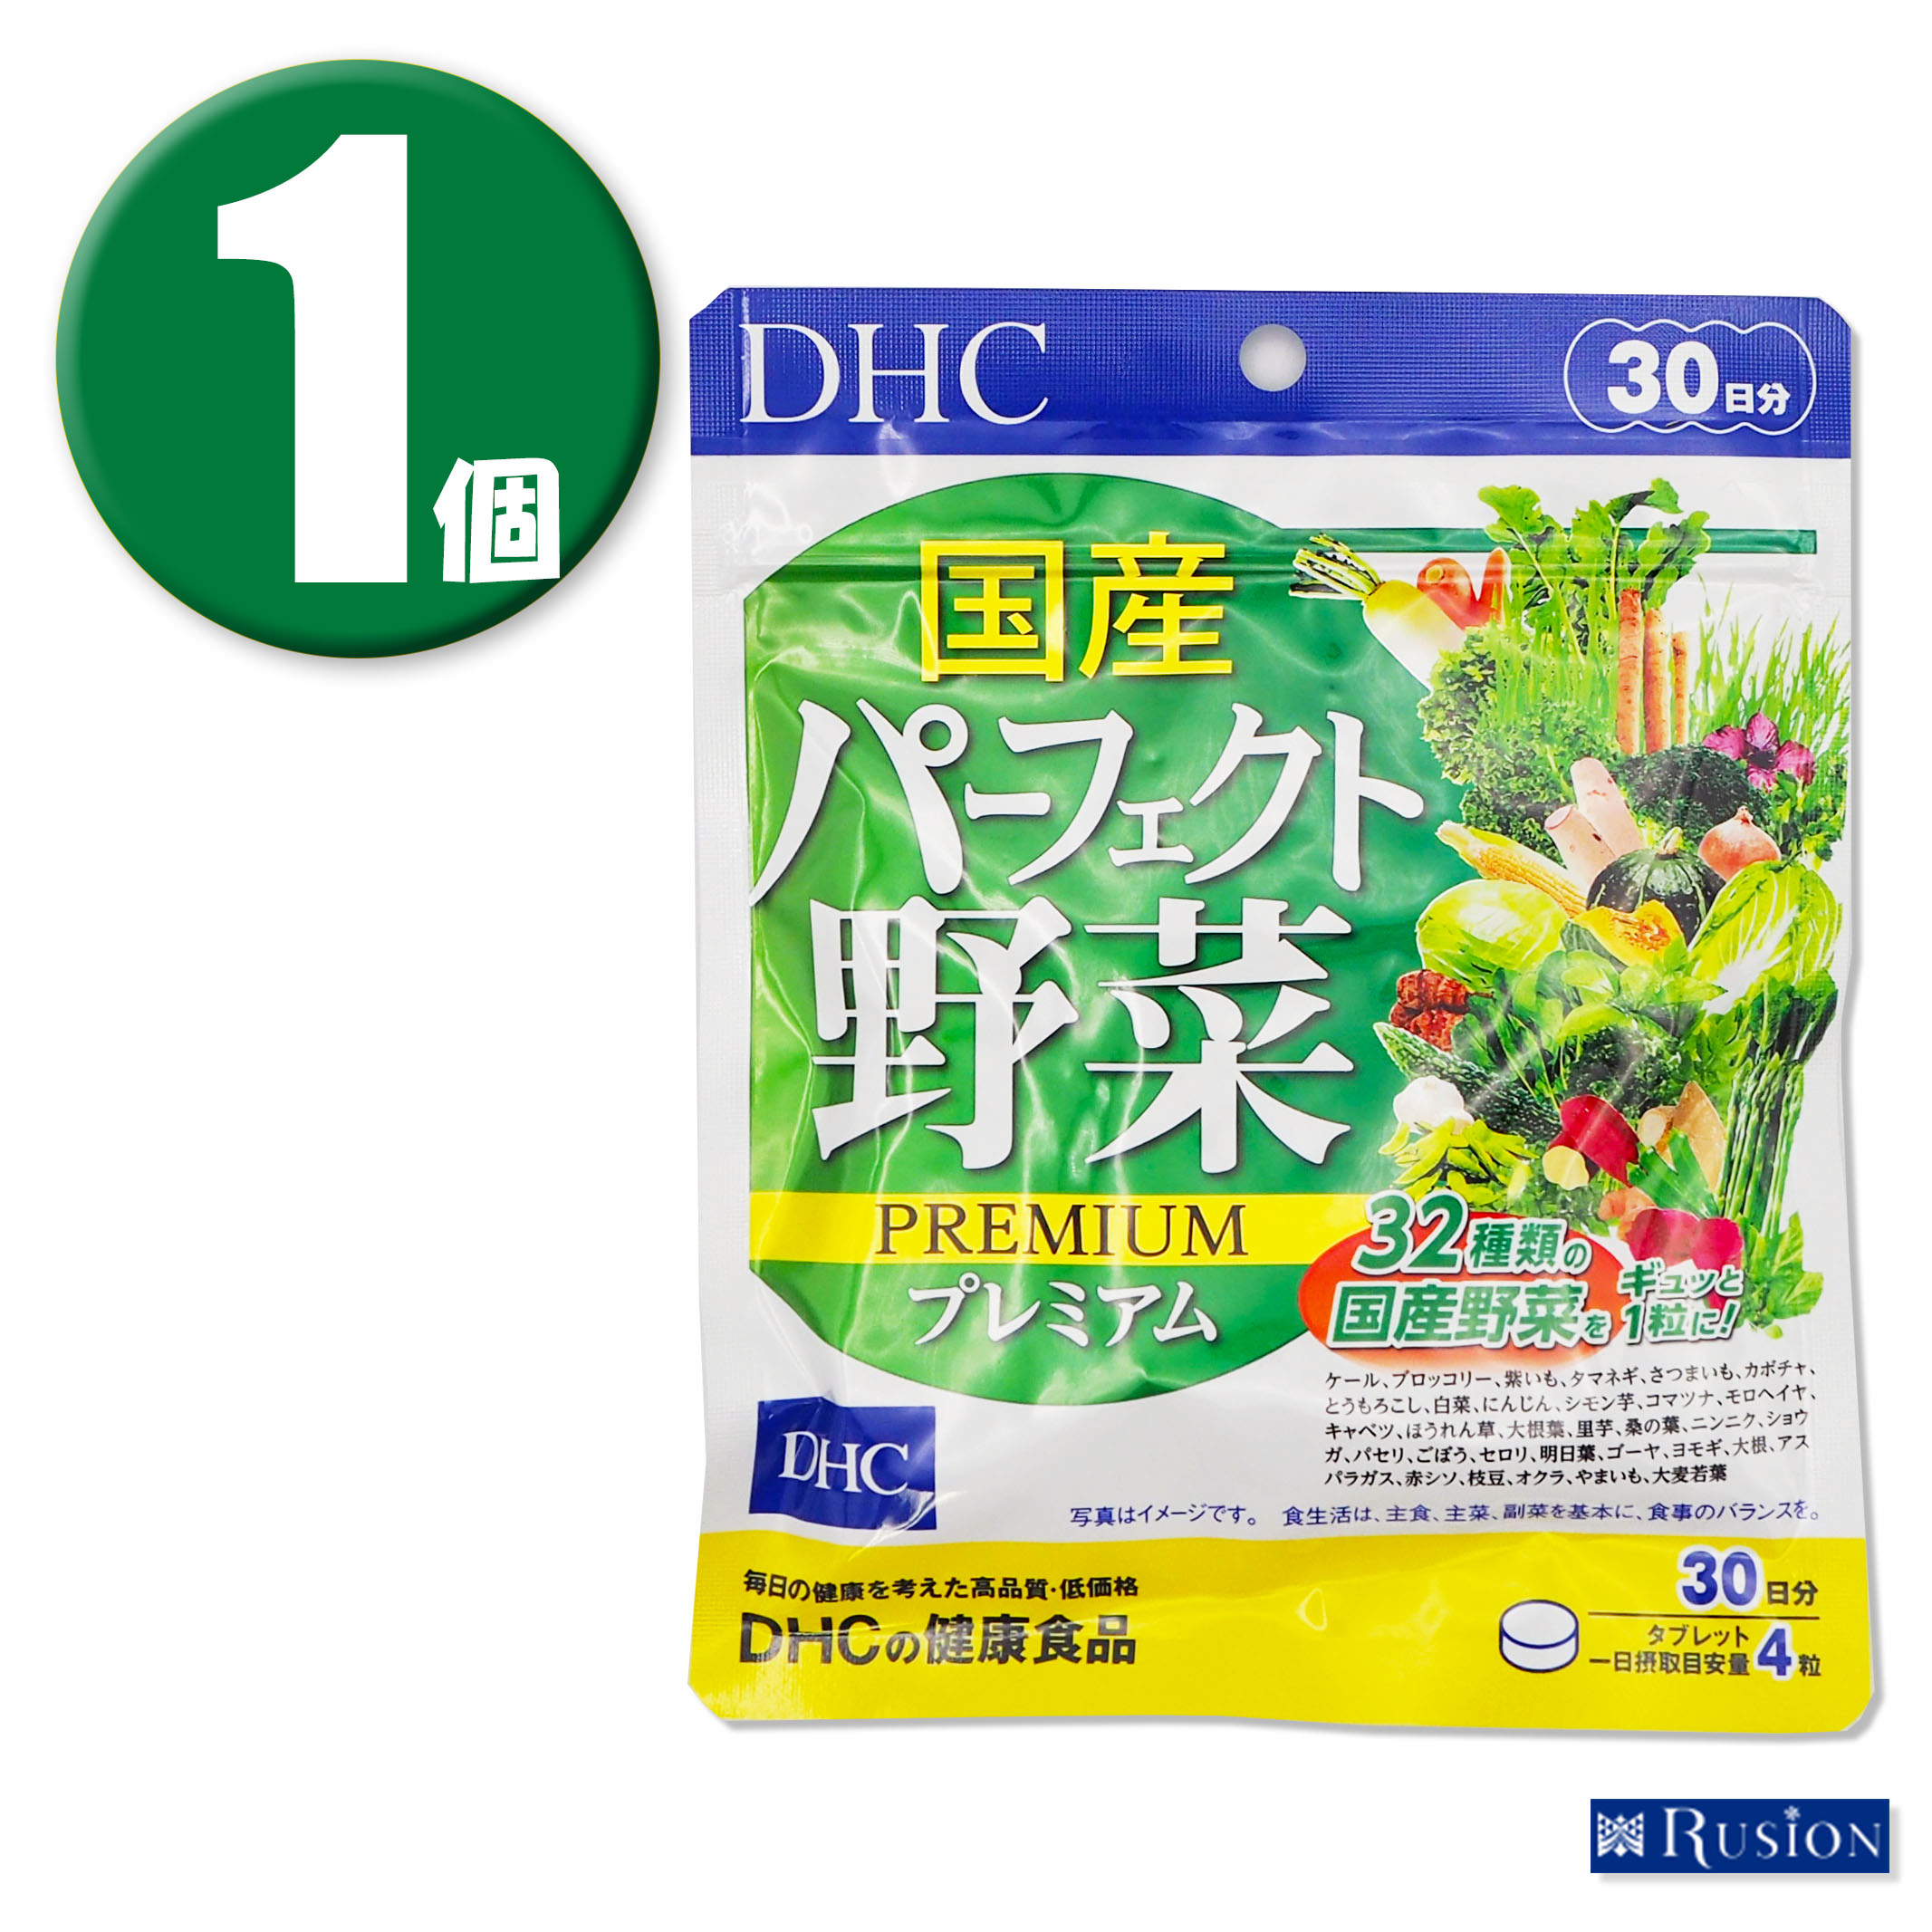 (1個) DHC サプリメント 国産パーフェクト野菜プレミアム 30日分 ディーエイチシー 健康食品